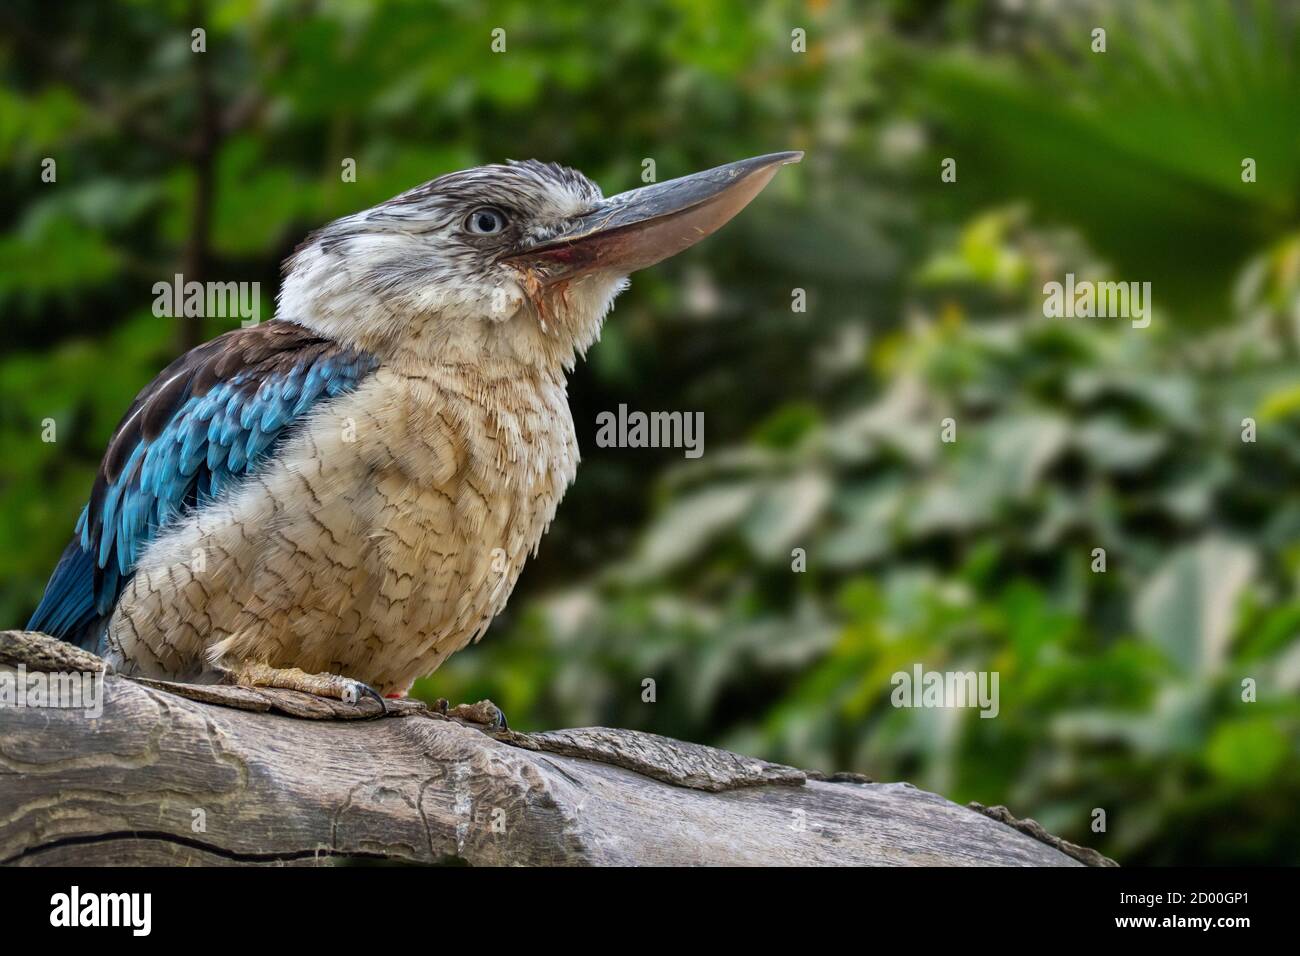 Le kookaburra à ailes bleues (Dacelo leachii), grande espèce de kingfisher originaire du nord de l'Australie et du sud de la Nouvelle-Guinée Banque D'Images